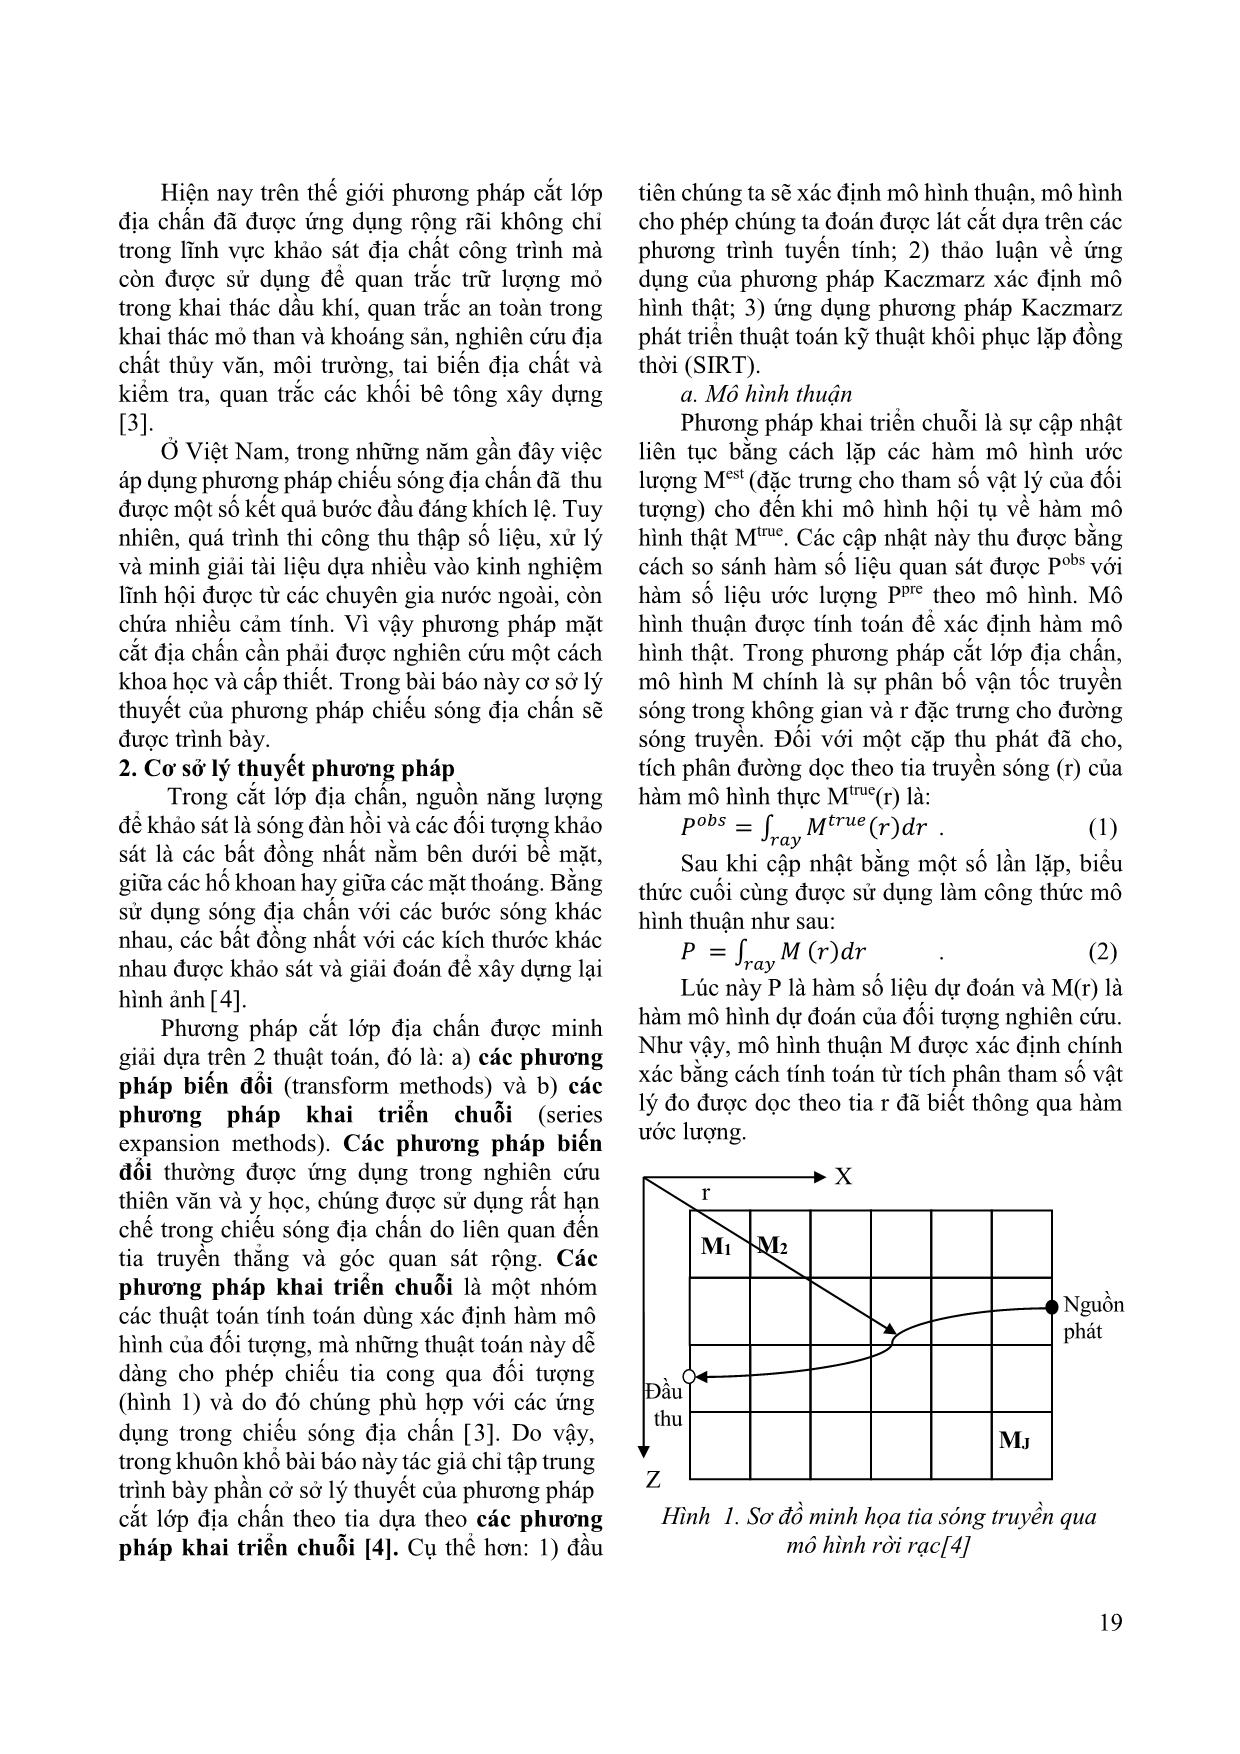 Phương pháp chiếu sóng địa chấn theo tia trang 2